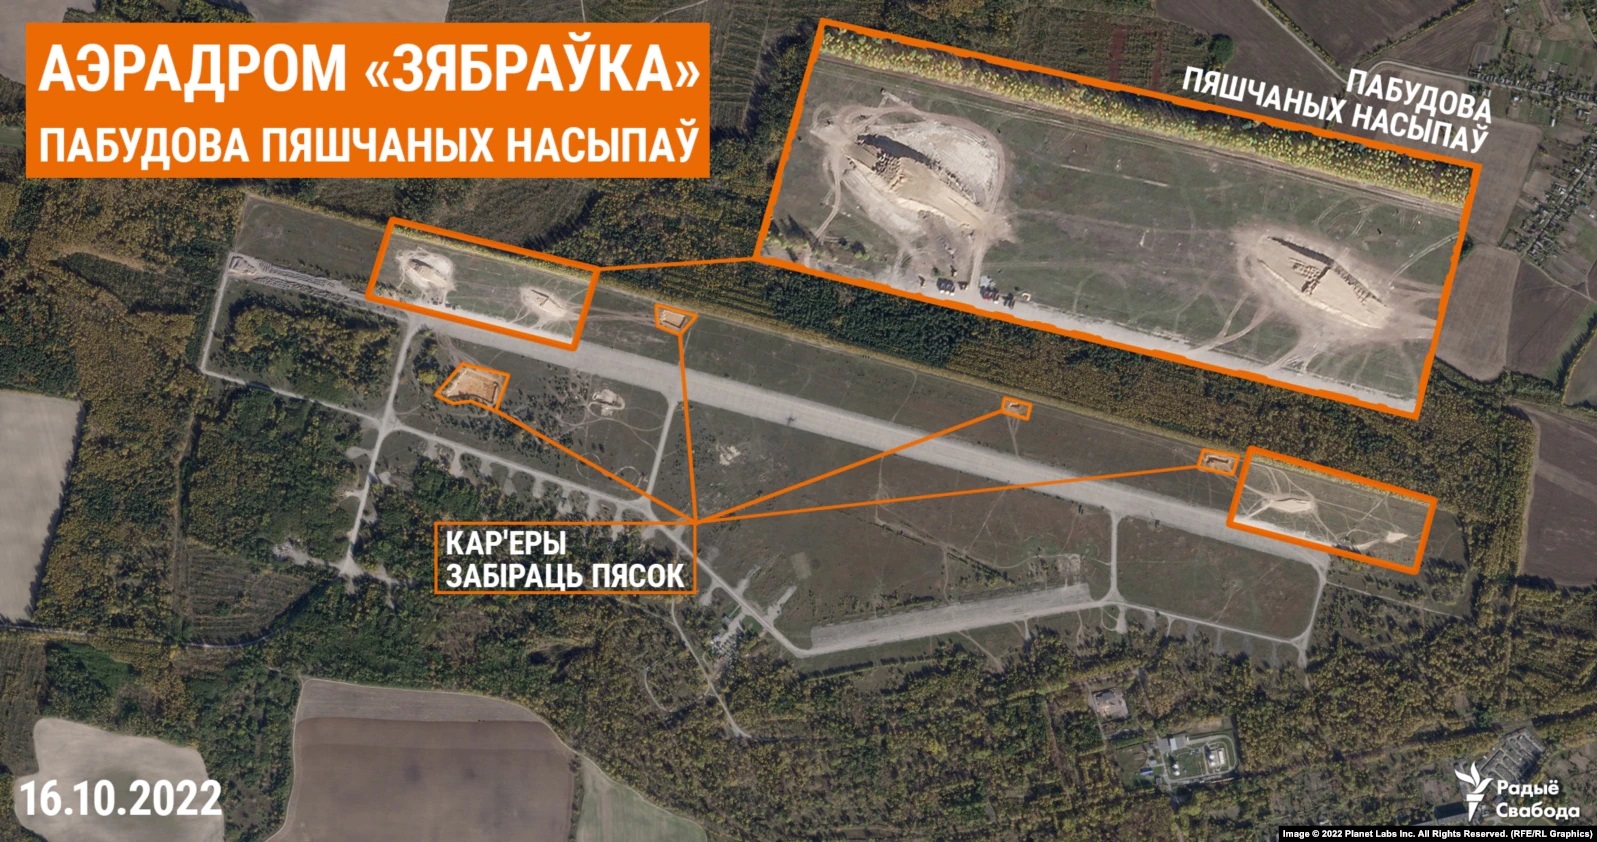 Спутниковые снимки зафиксировали увеличение российской техники и войск на границе Беларуси и Украины